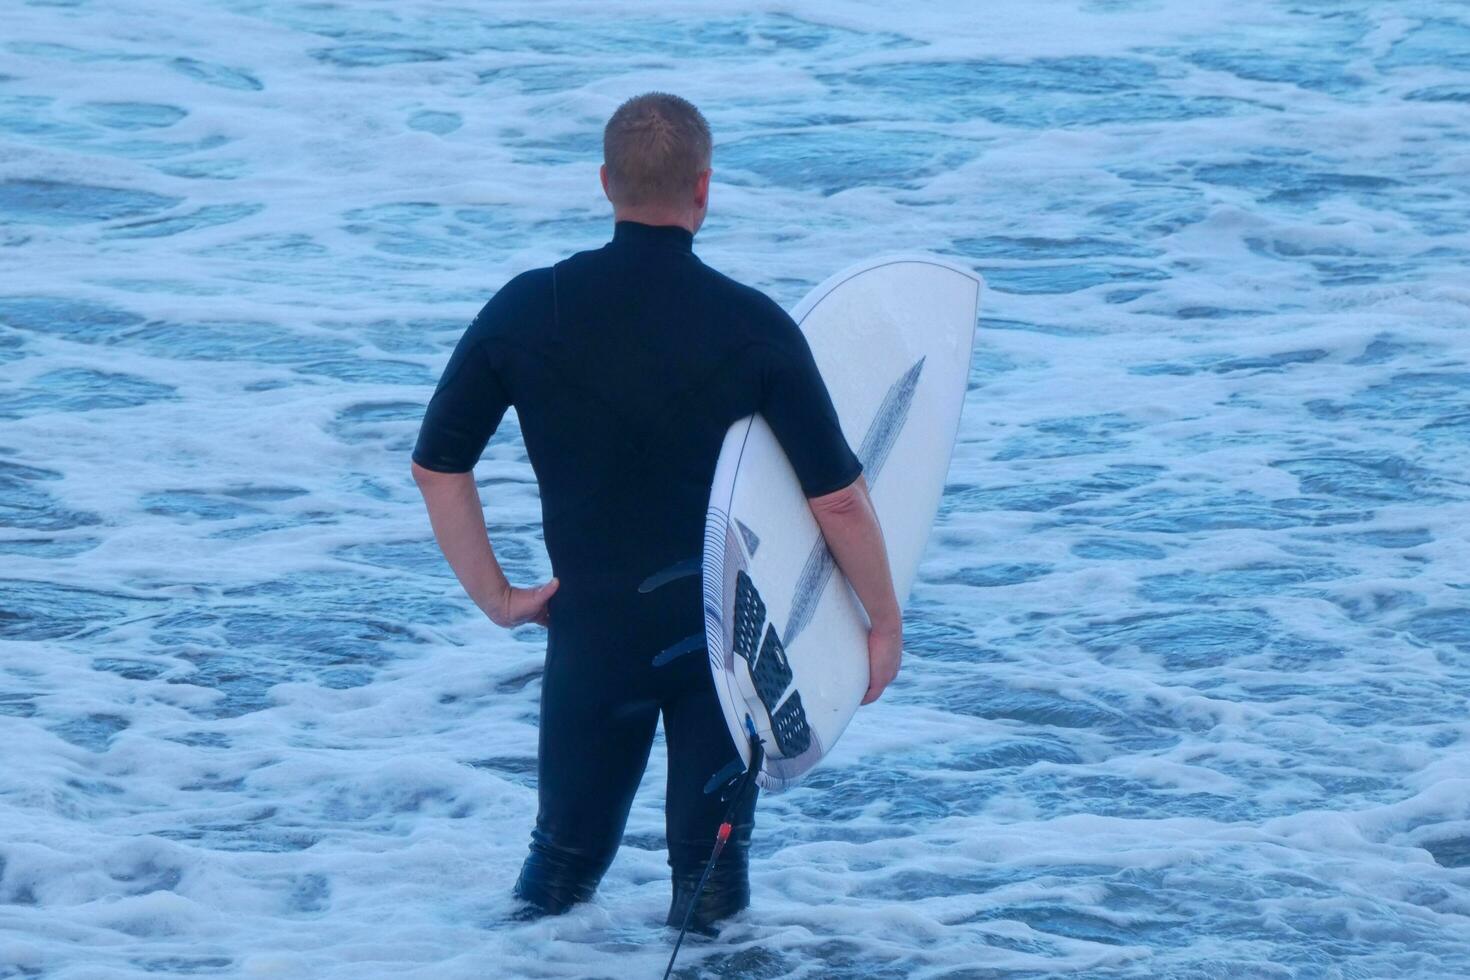 Surfer bekommen bereit zu eingeben das Wasser und Gehen mit das Tafel entlang das Ufer. foto